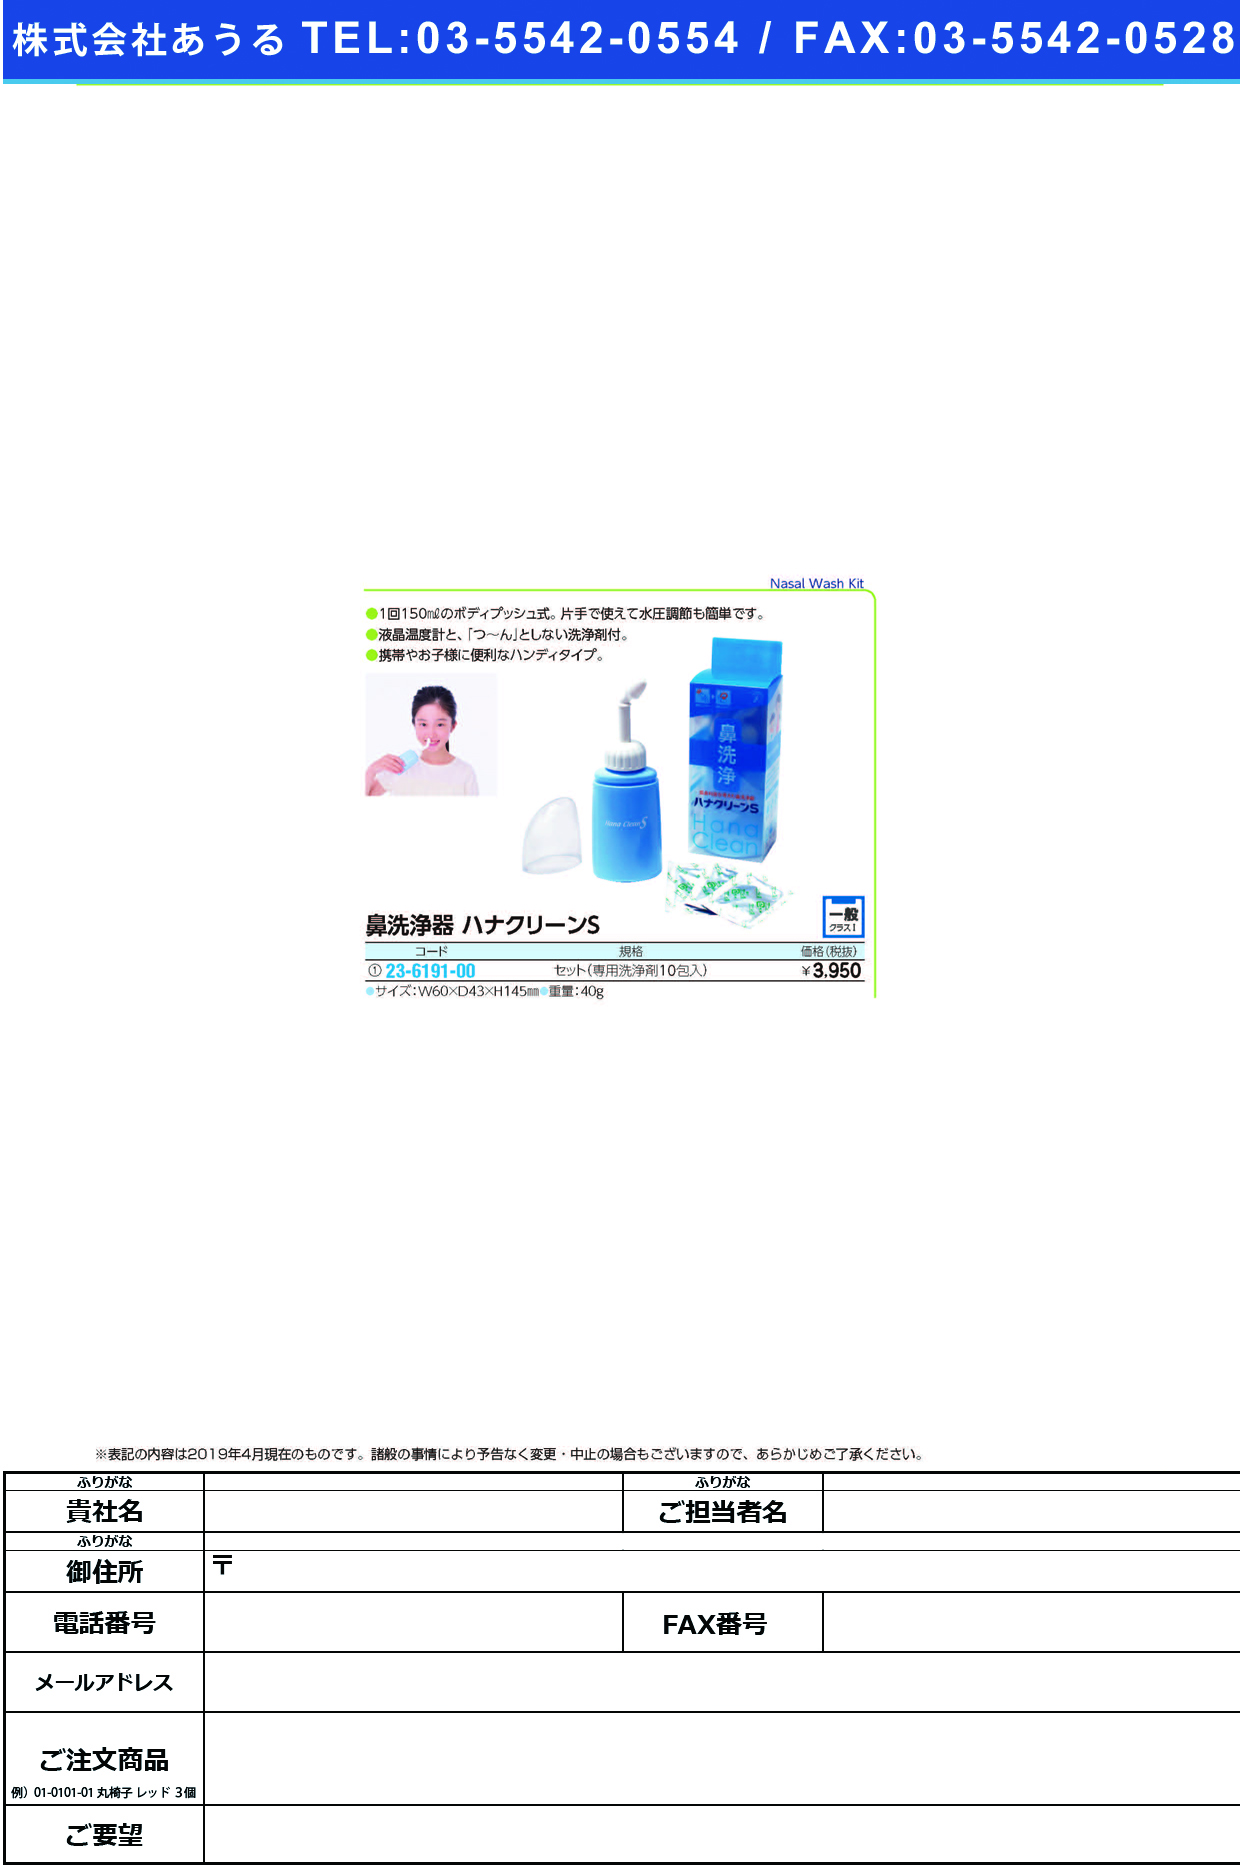 (23-6191-00)ハナクリーンＳ（鼻洗浄器） ﾎﾝﾀｲ+ｻｰﾚS10ﾎﾟｳﾂｷ ﾊﾅｸﾘｰﾝS(ﾊﾅｾﾝｼﾞｮｳｷ)【1個単位】【2019年カタログ商品】